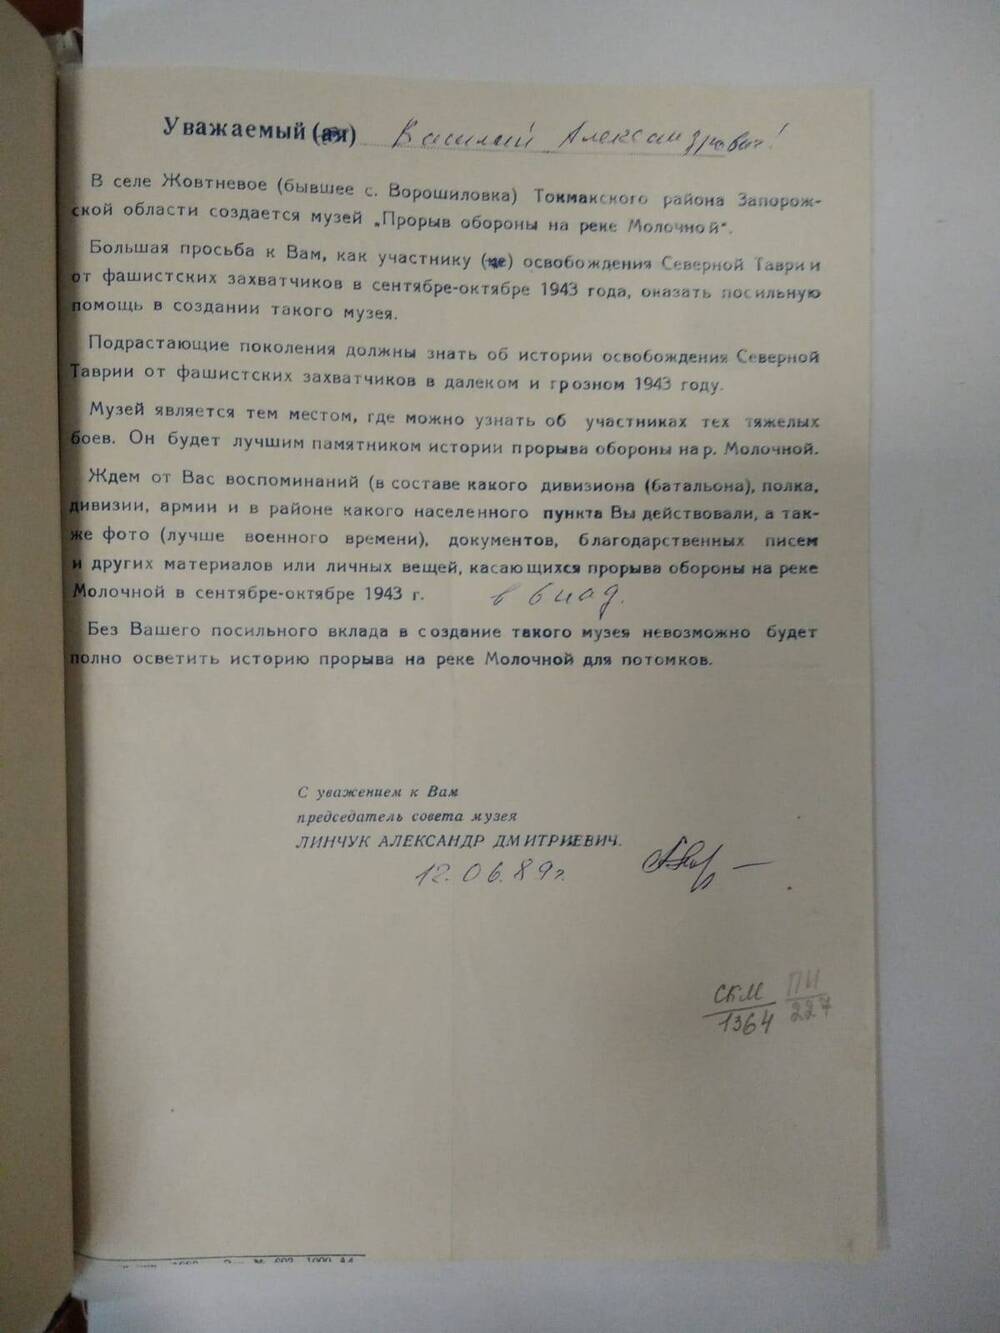 Письмо Козлову В.А. от Линчука